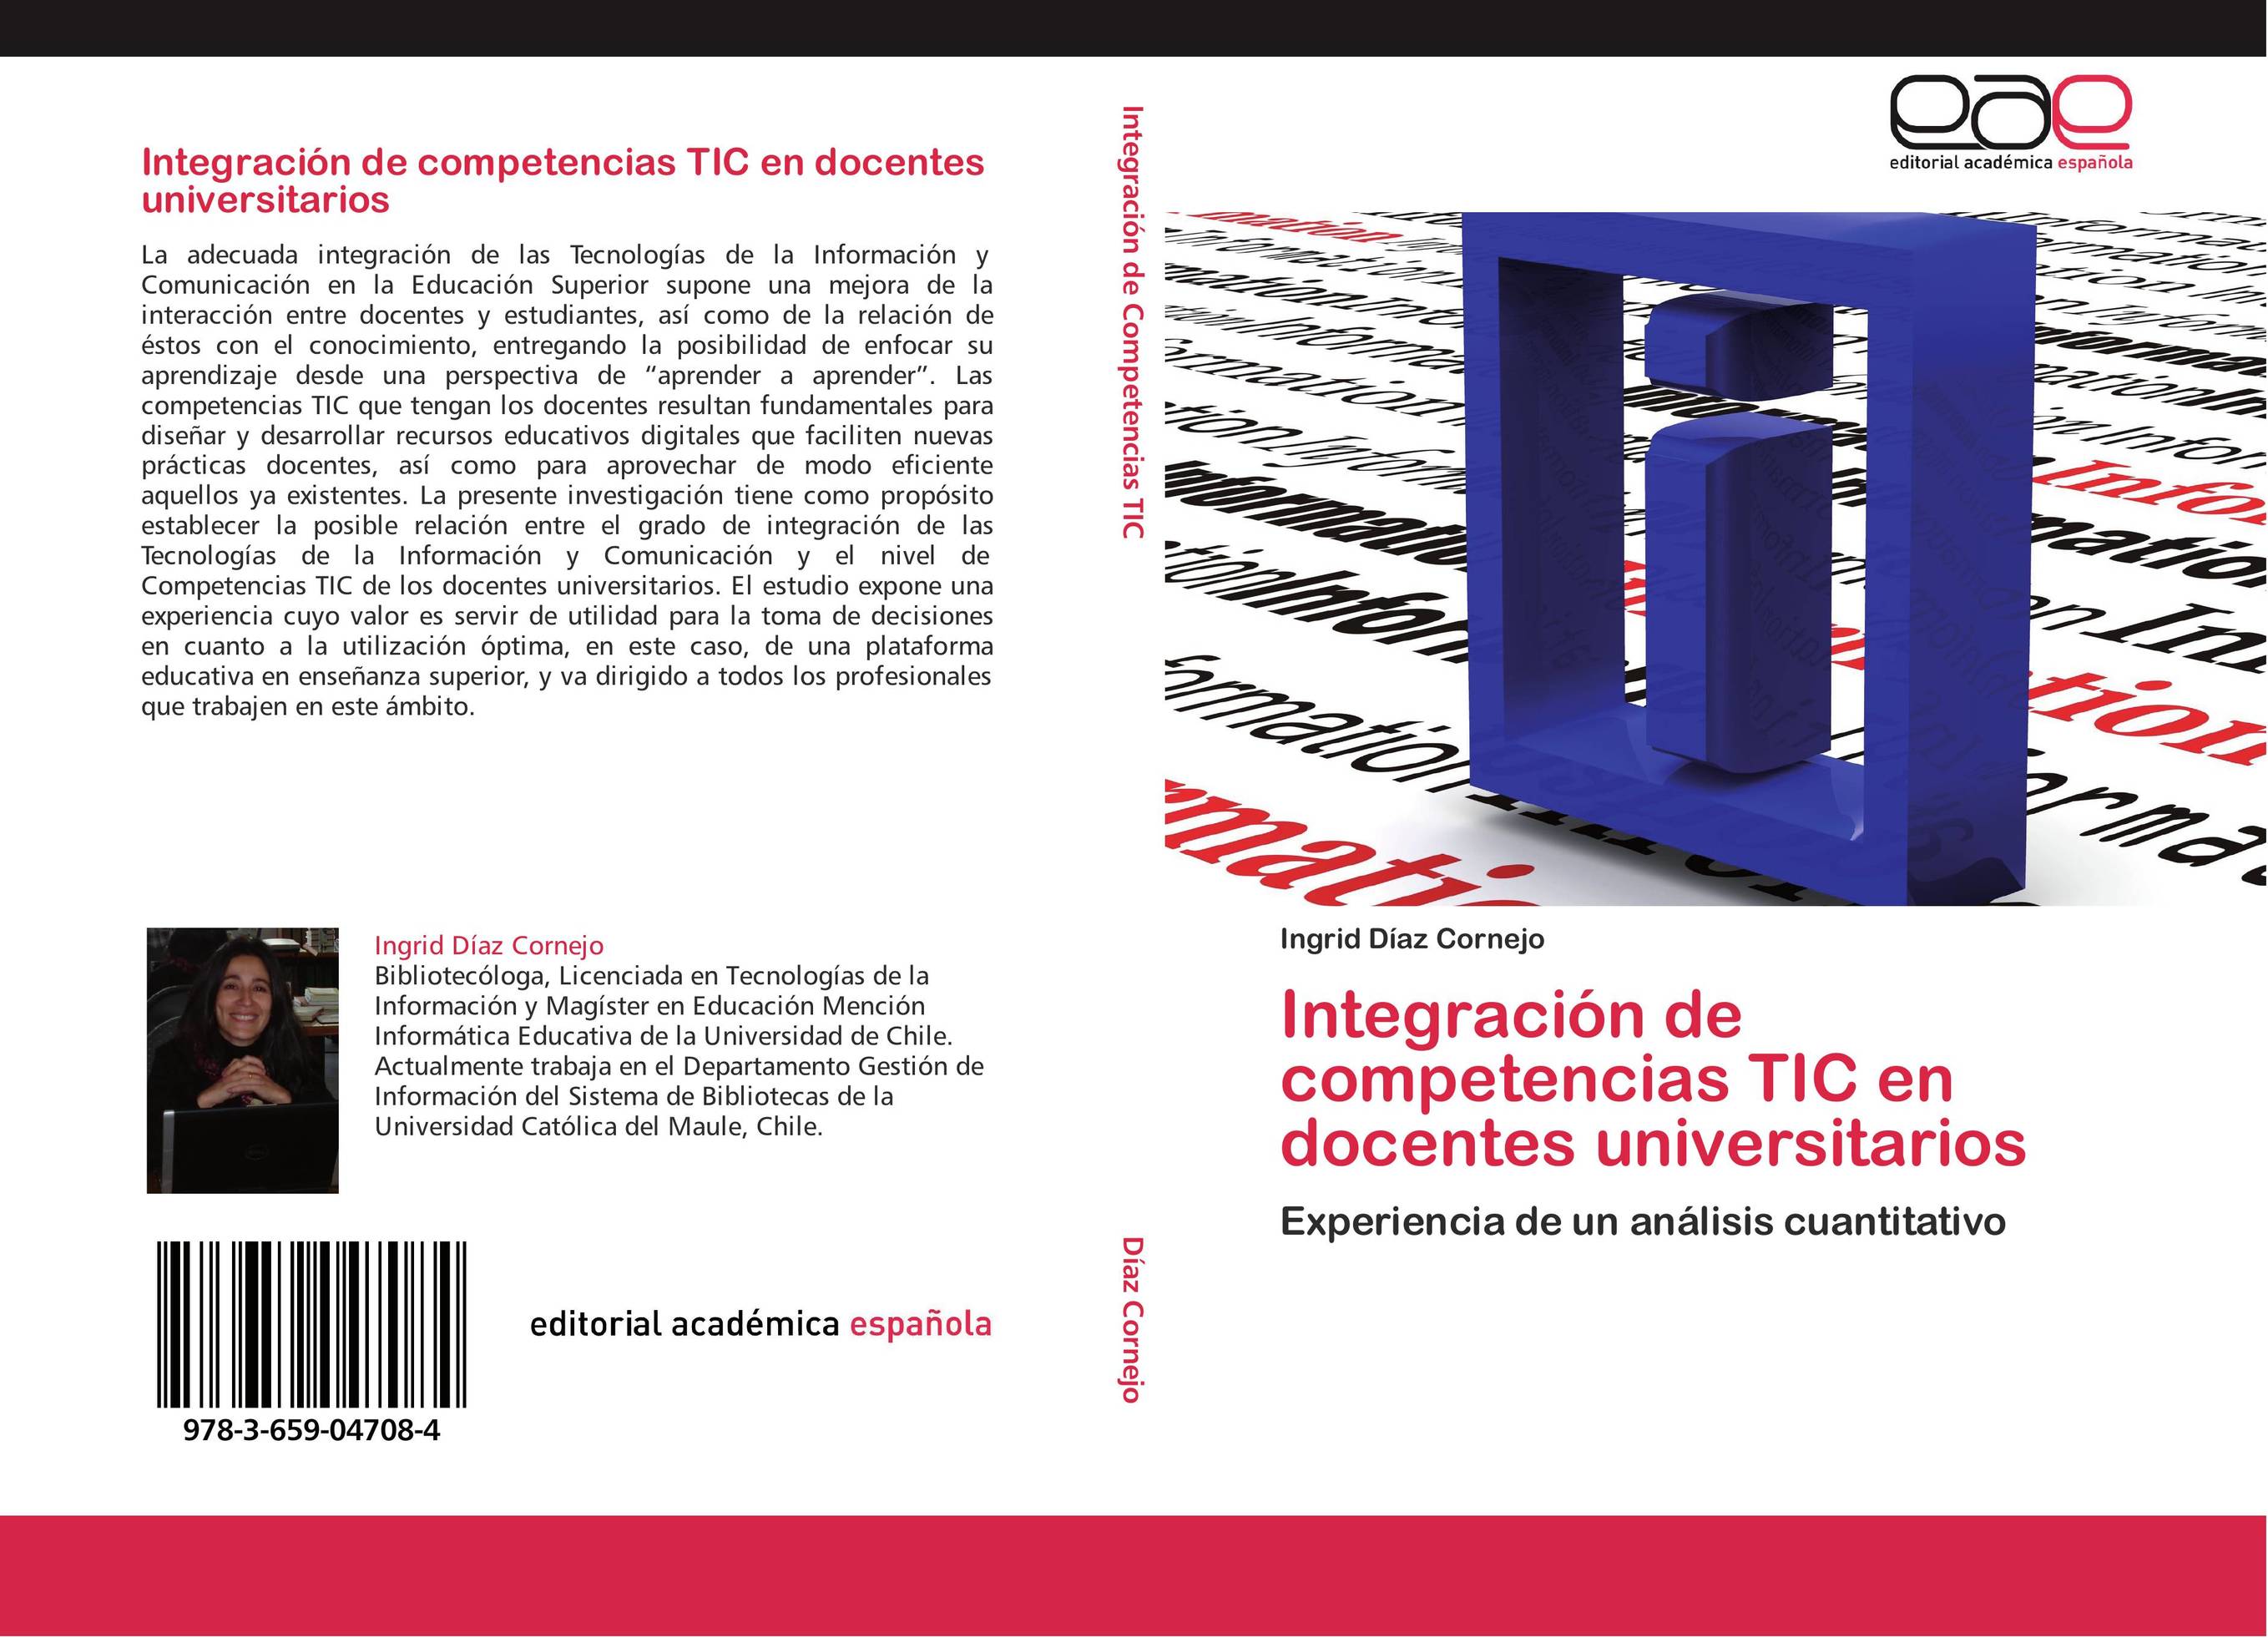 Integración de competencias TIC en docentes universitarios